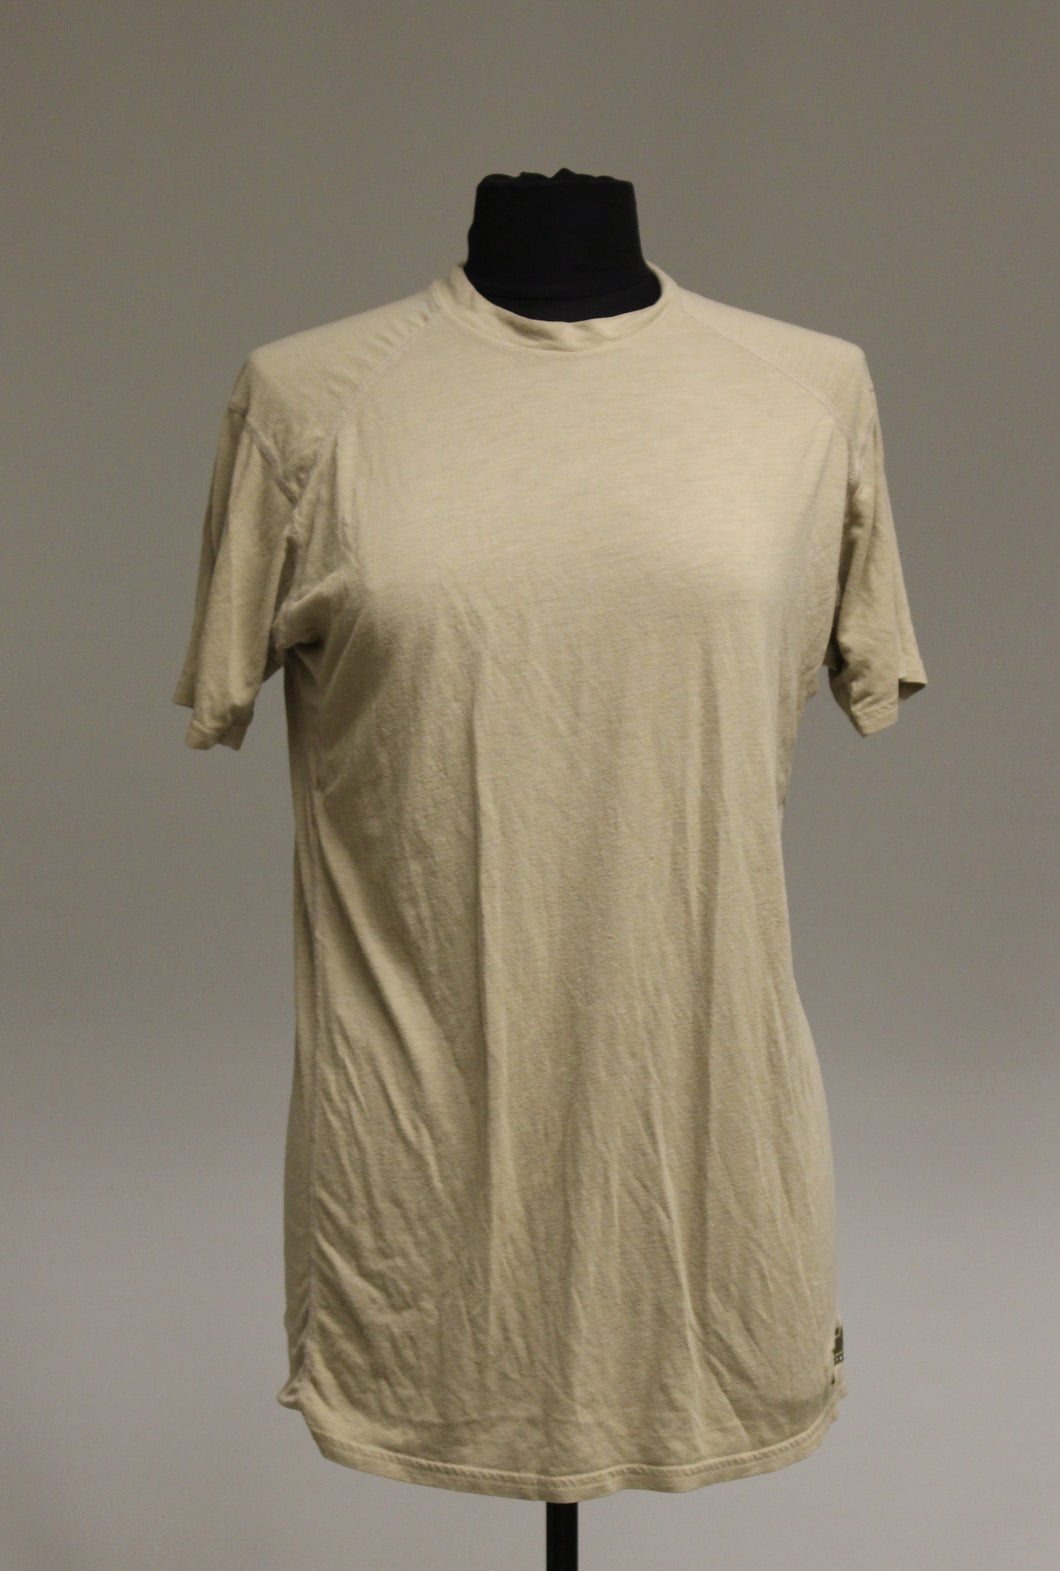 XGO Flame Retardant Short Sleeve T-Shirt - Desert Tan - Medium - Used